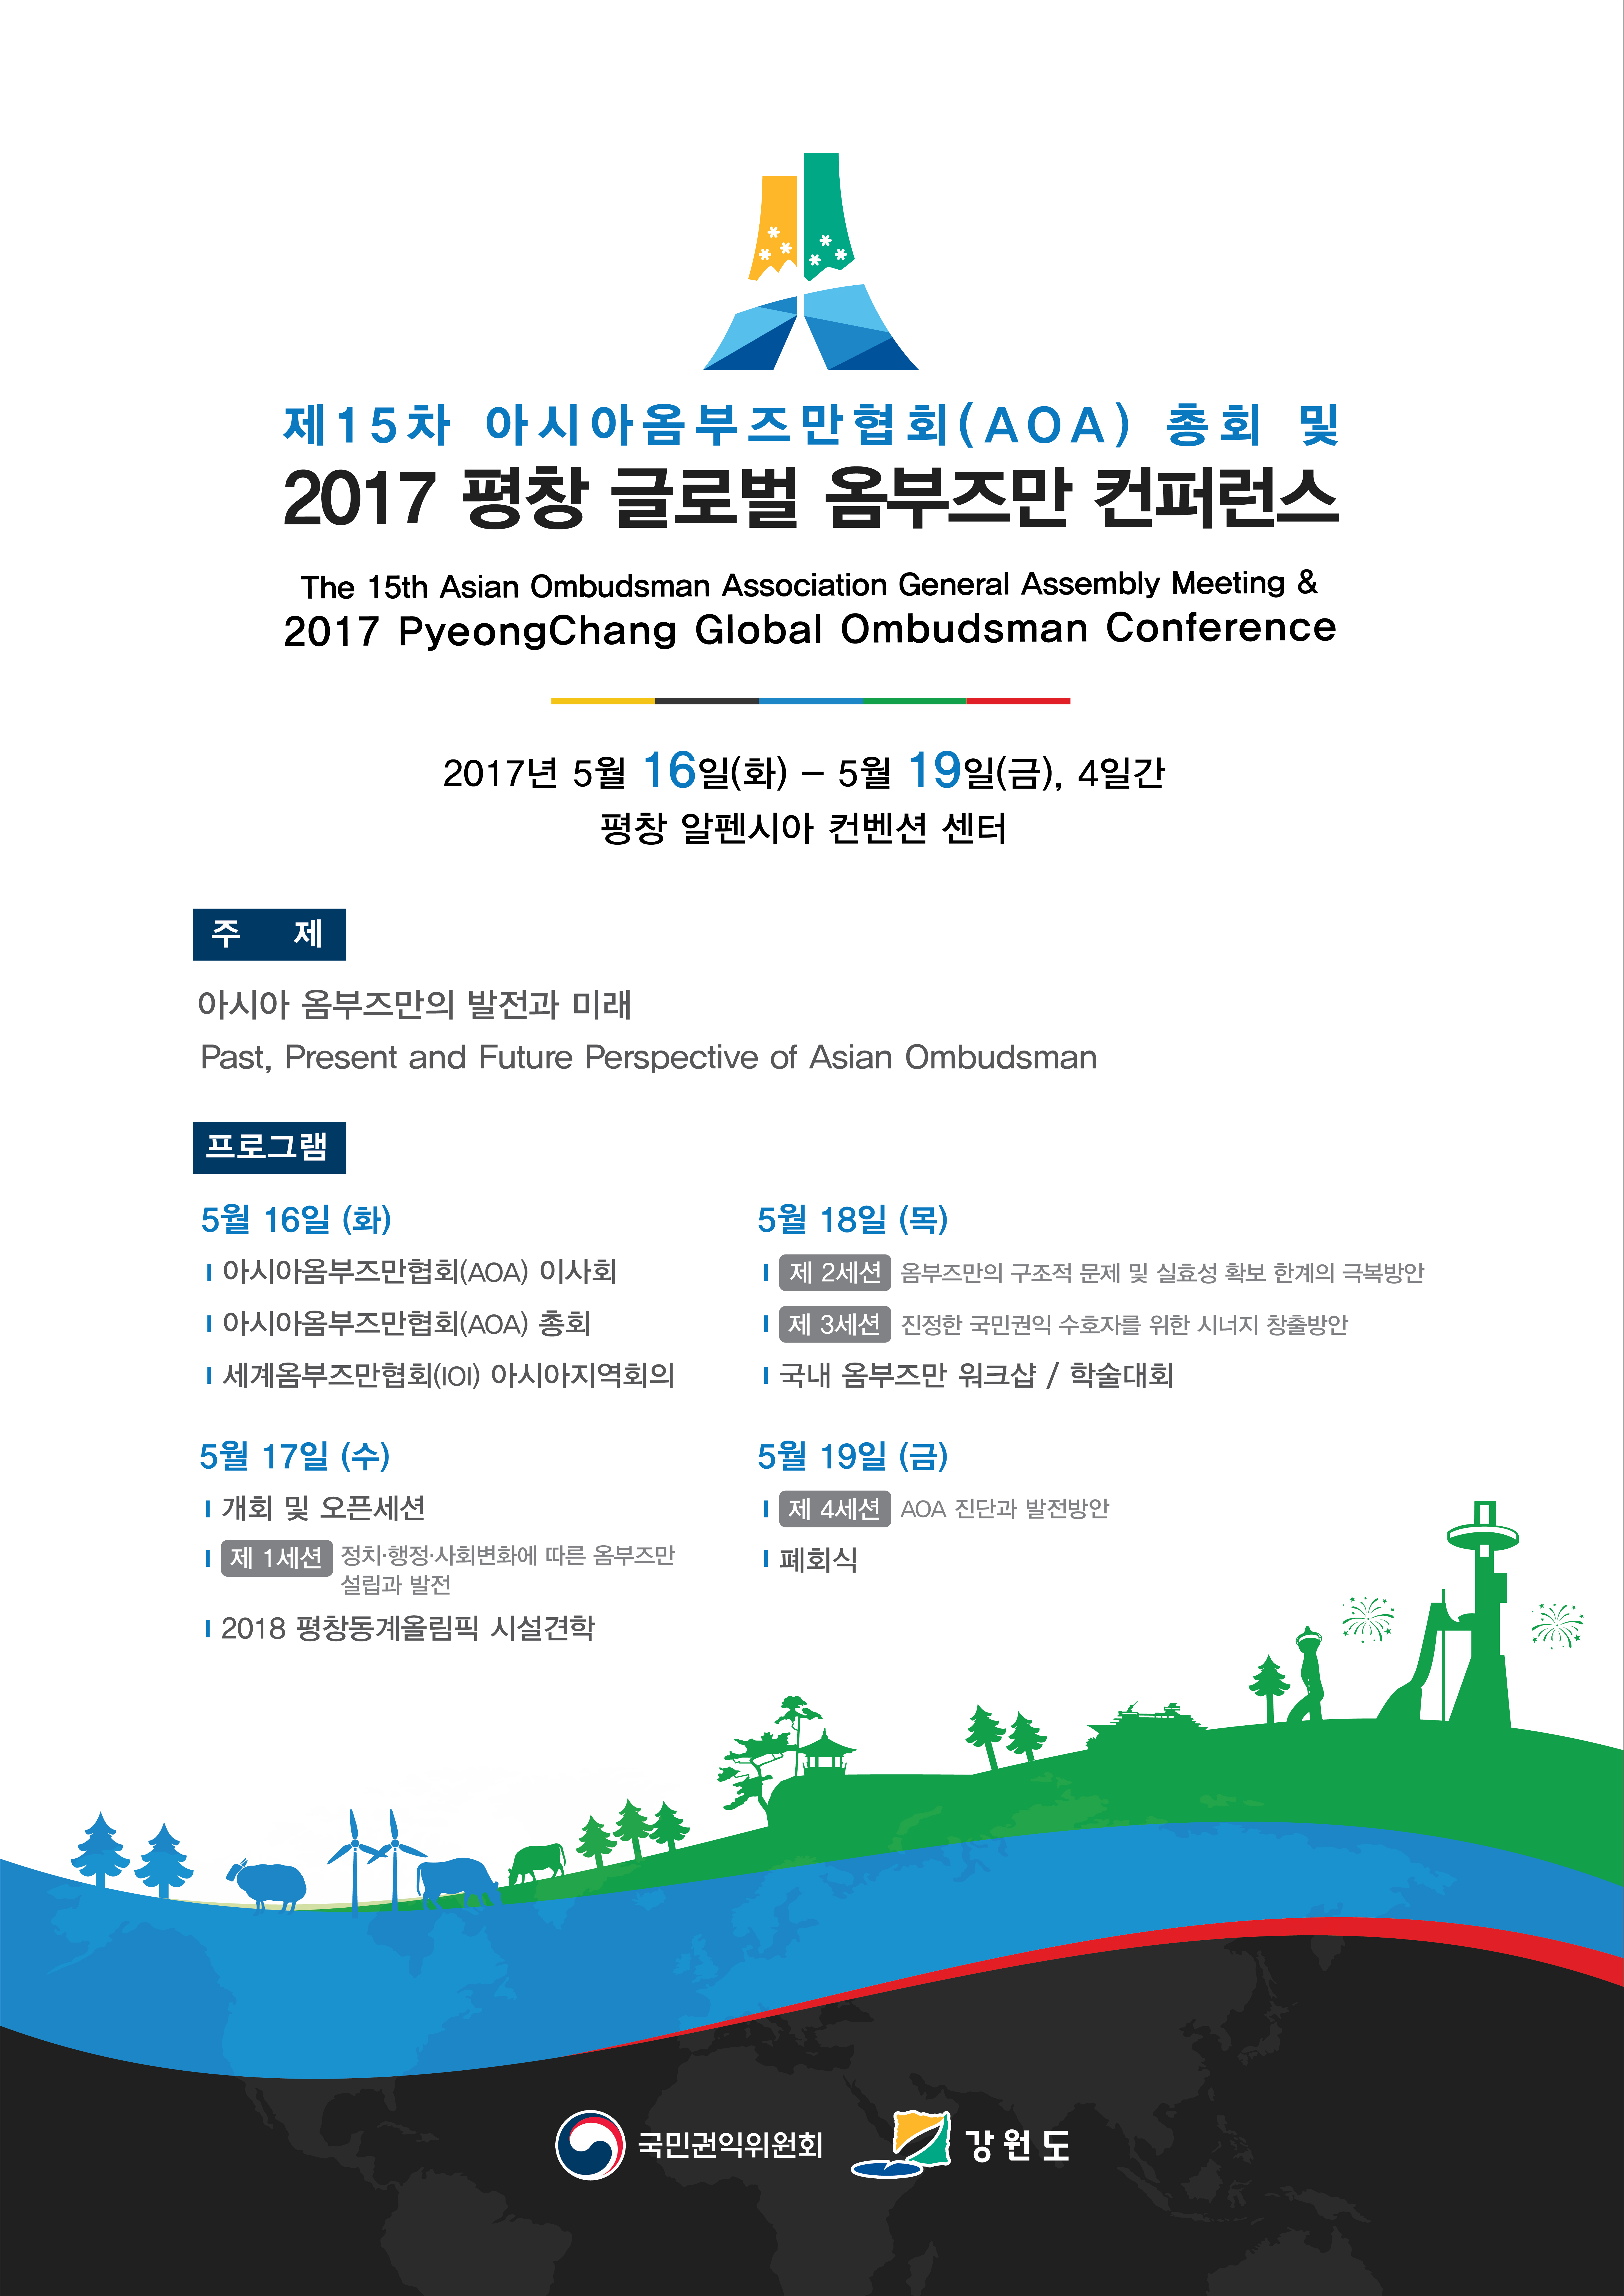 [알림] 2017 평창 글로벌 옴부즈만 컨퍼런스 개최 안내